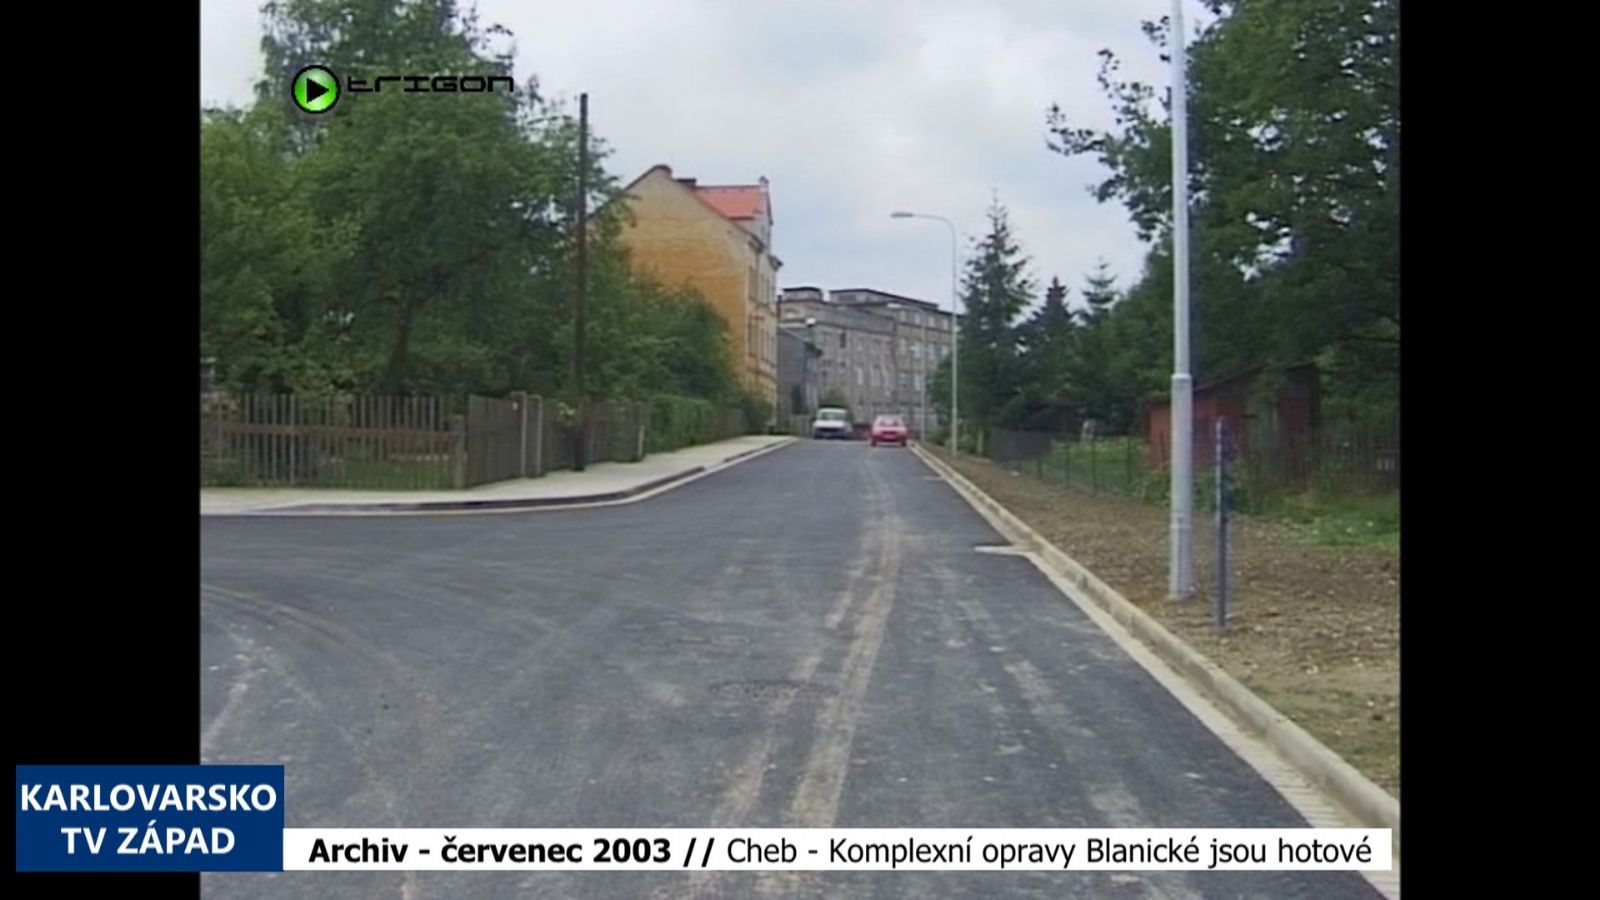 2003 – Cheb: Komplexní opravy Blanické jsou hotové (TV Západ)